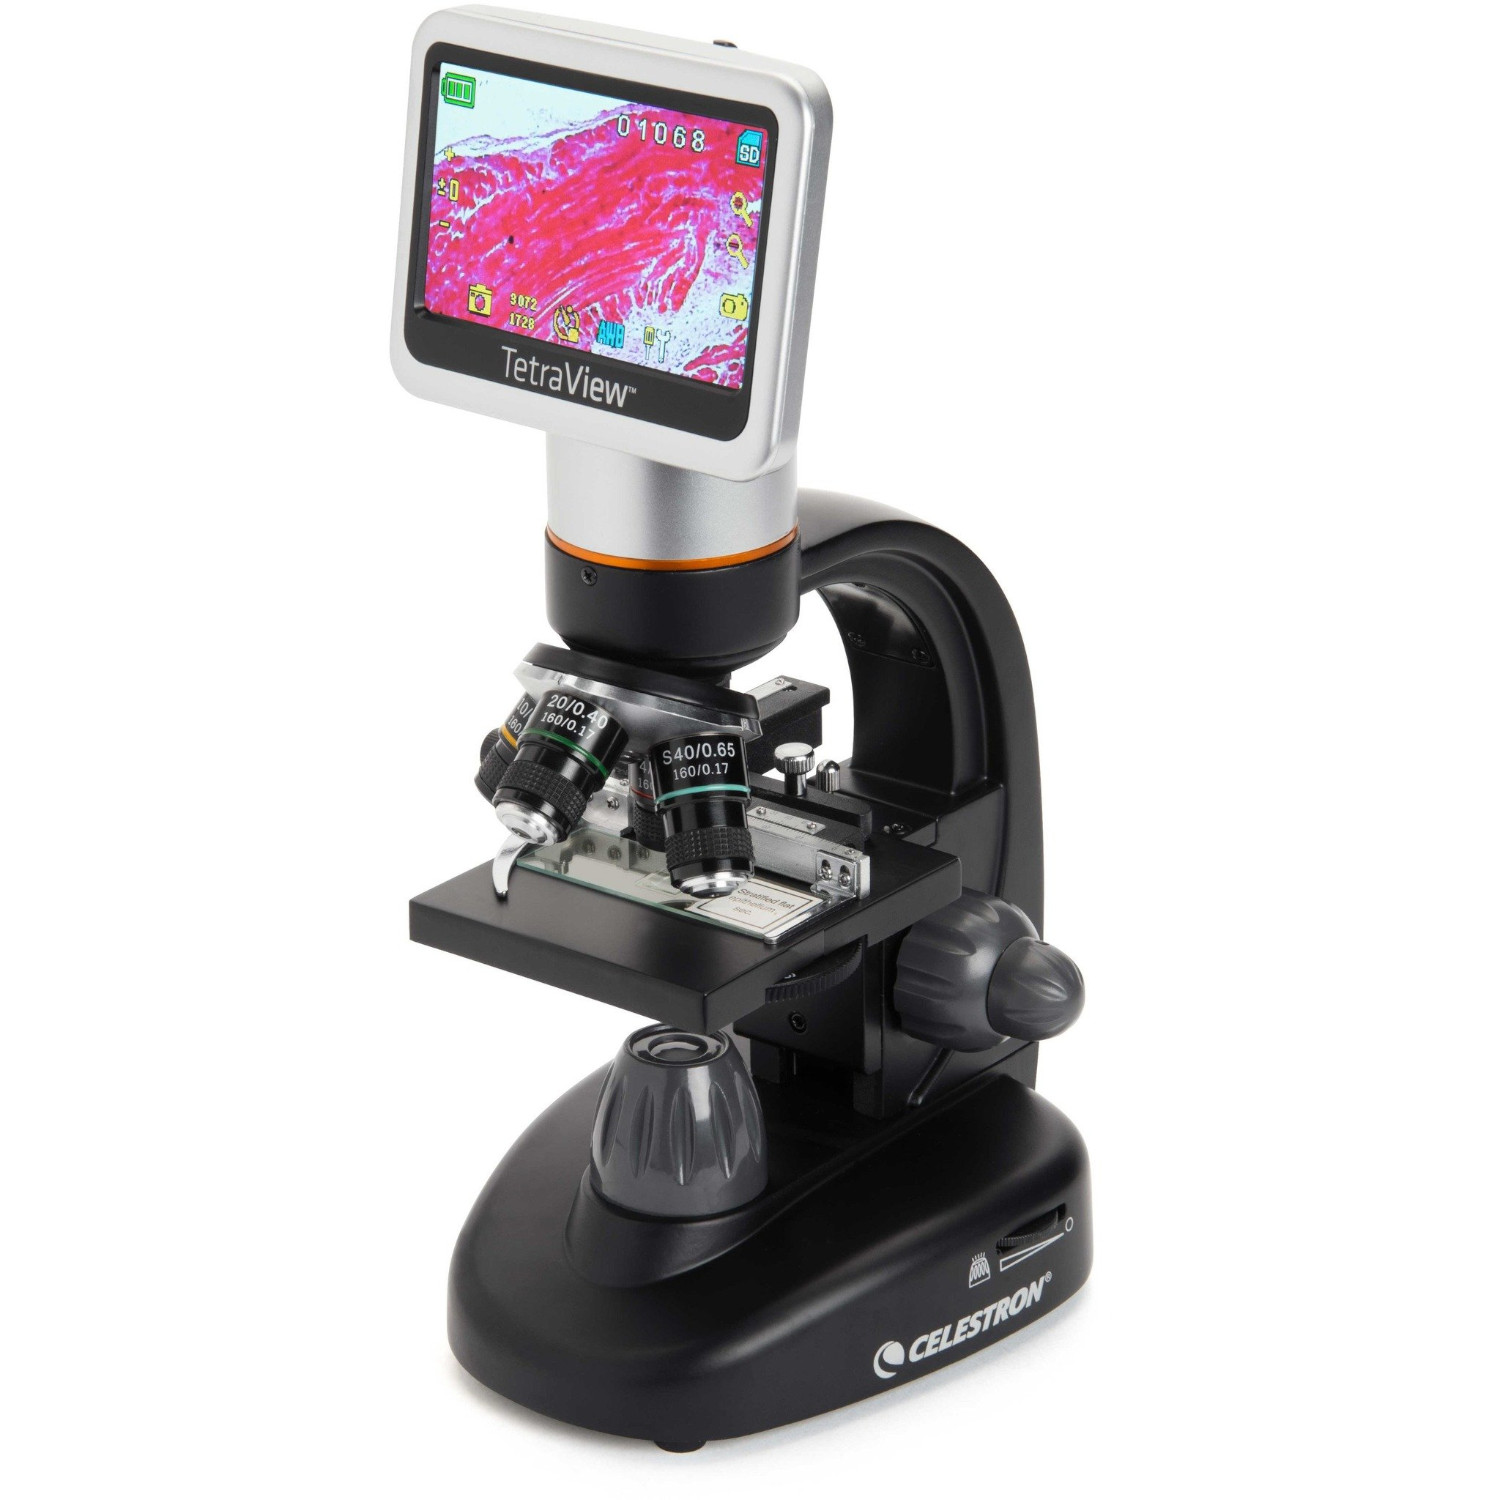 38228円 全ての 顕微鏡 400×7インチHD単眼生体顕微鏡デジタル顕微鏡ダニ検査室用顕微鏡 ポータブル顕微鏡 操作が簡単